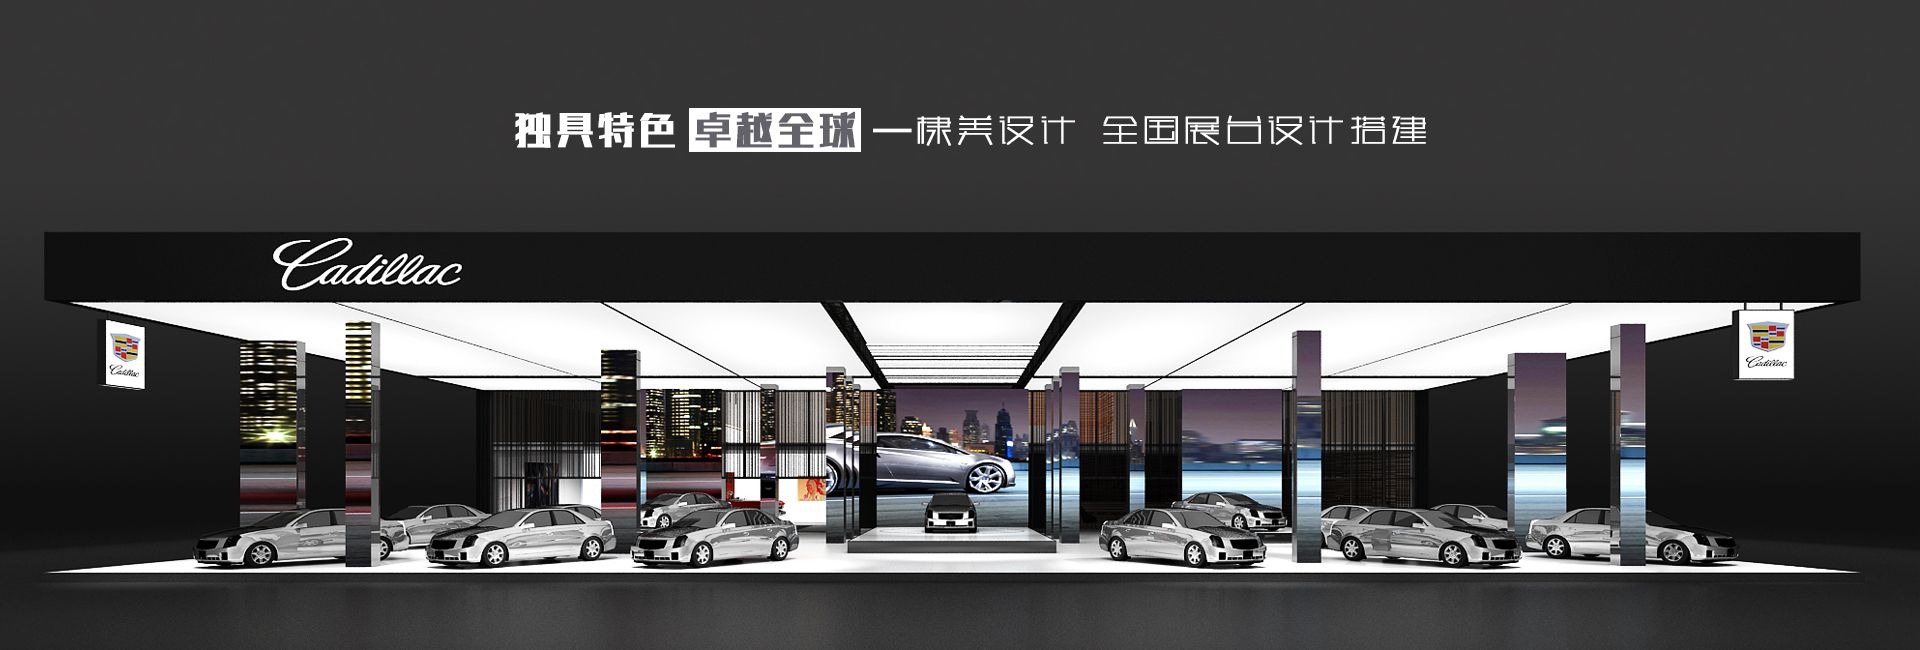 企业展厅设计装修公司-快闪店展览展示制作-上海展台设计搭建